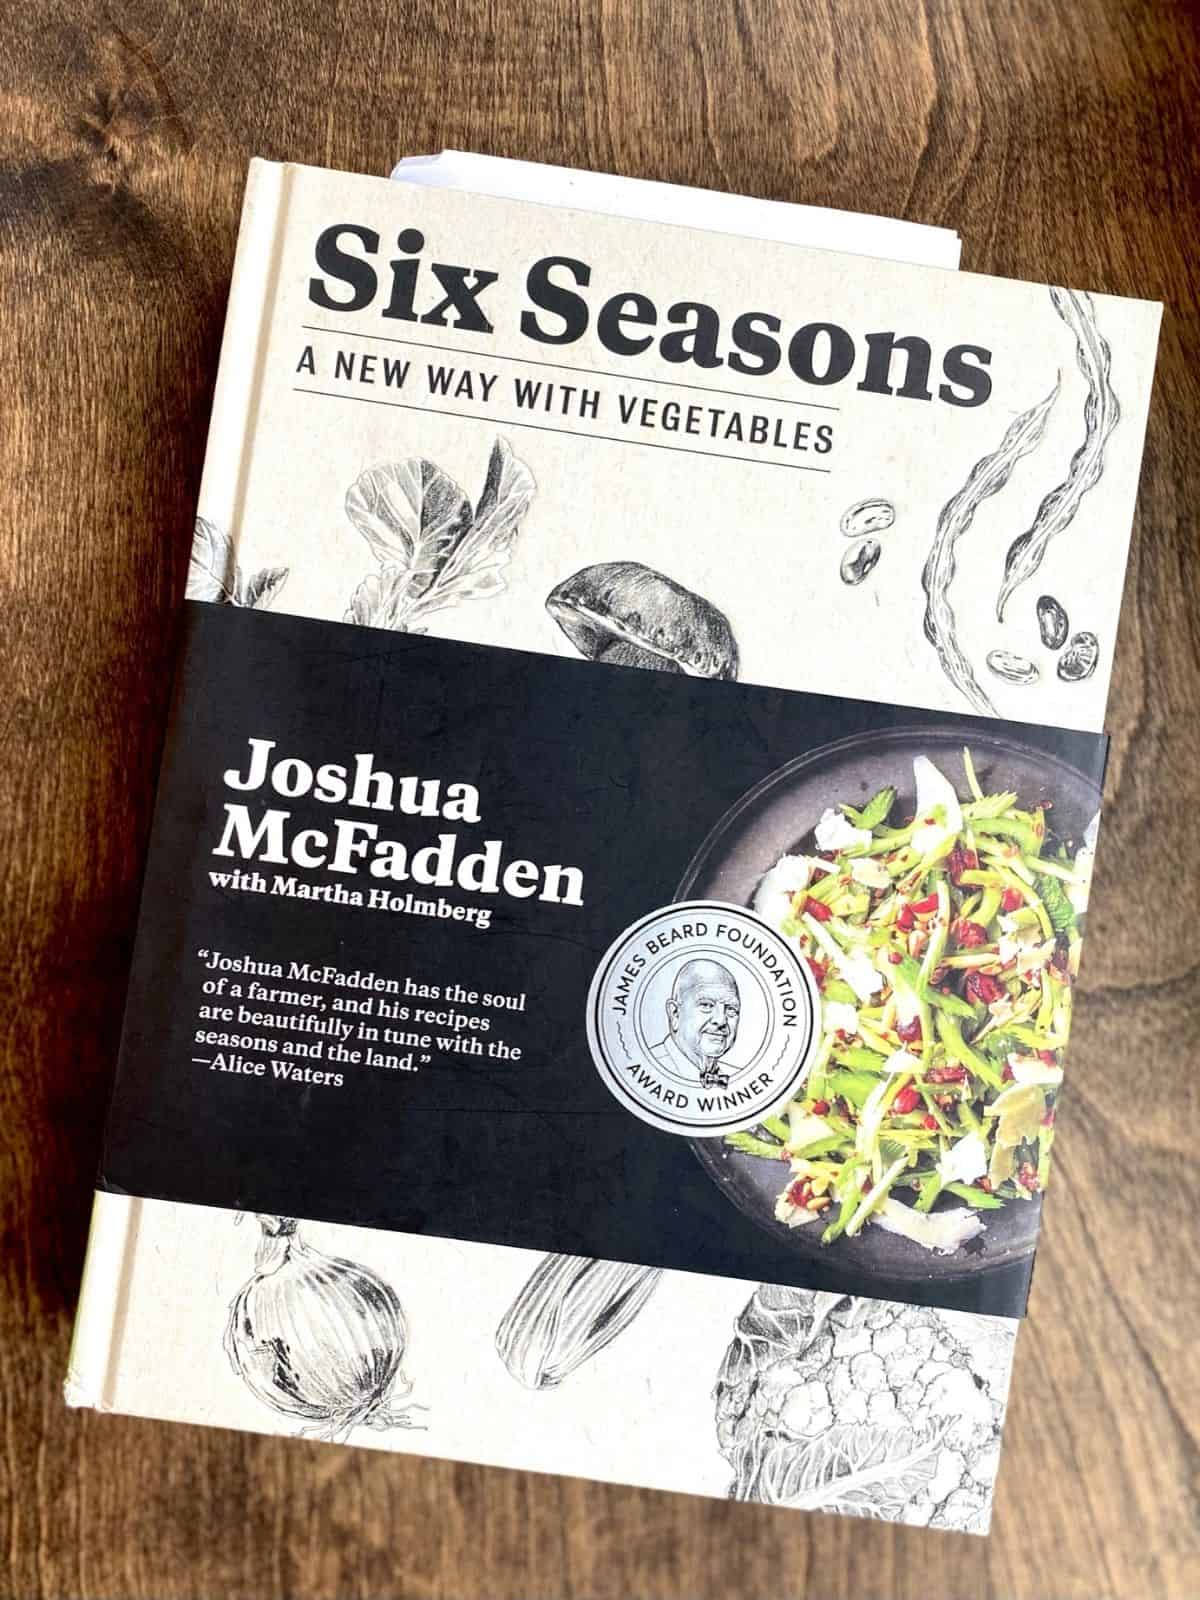 Six Seasons cookbook on wood background